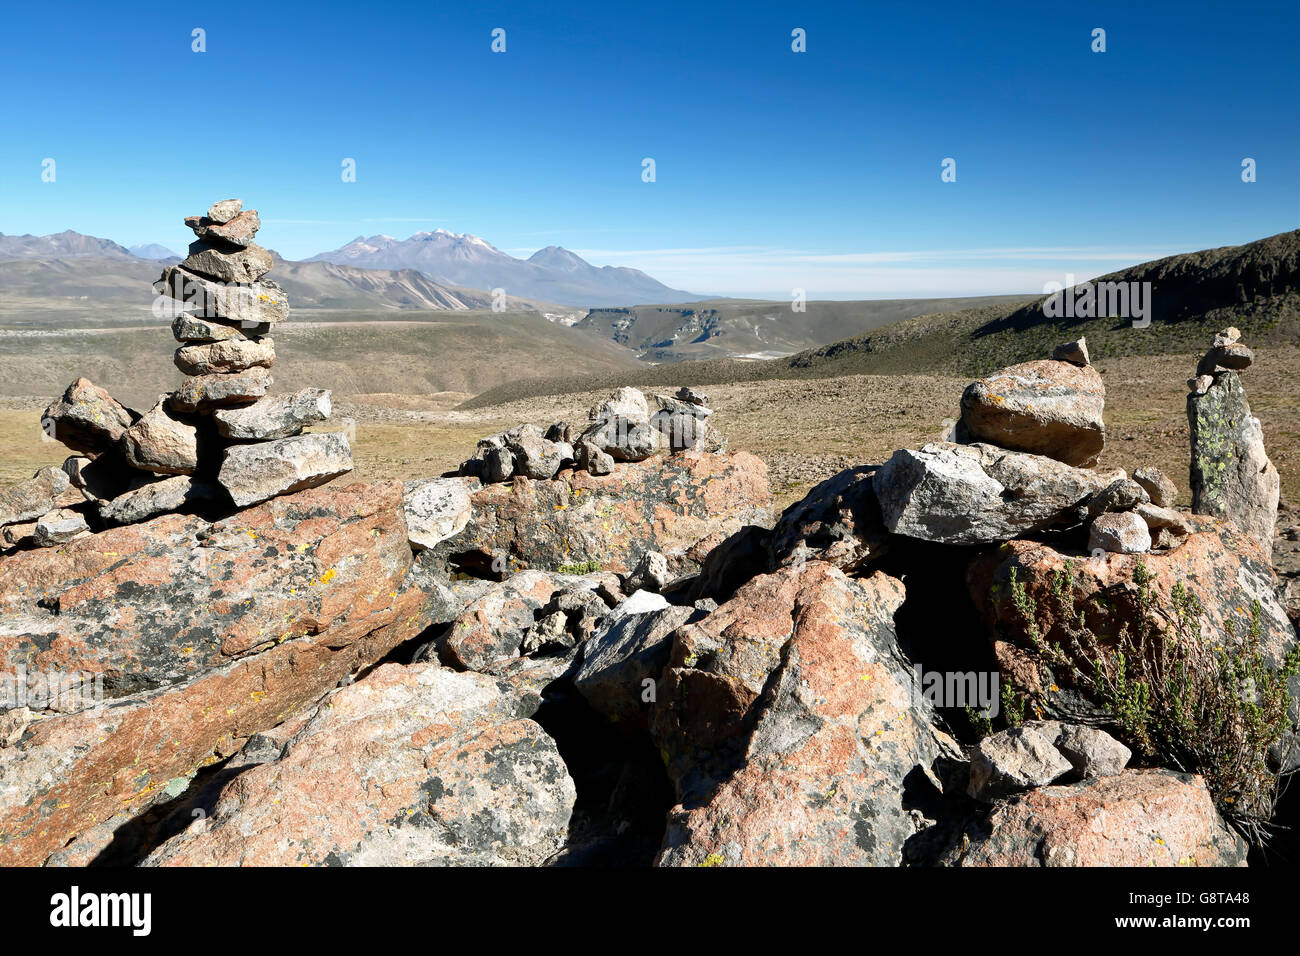 "Apachetas" (cairn-comme la pierre à l'épargne) et le Volcan Chachani (19 872 ft.) en arrière-plan, Los Volcanes surplombent, Arequipa, Pérou Banque D'Images